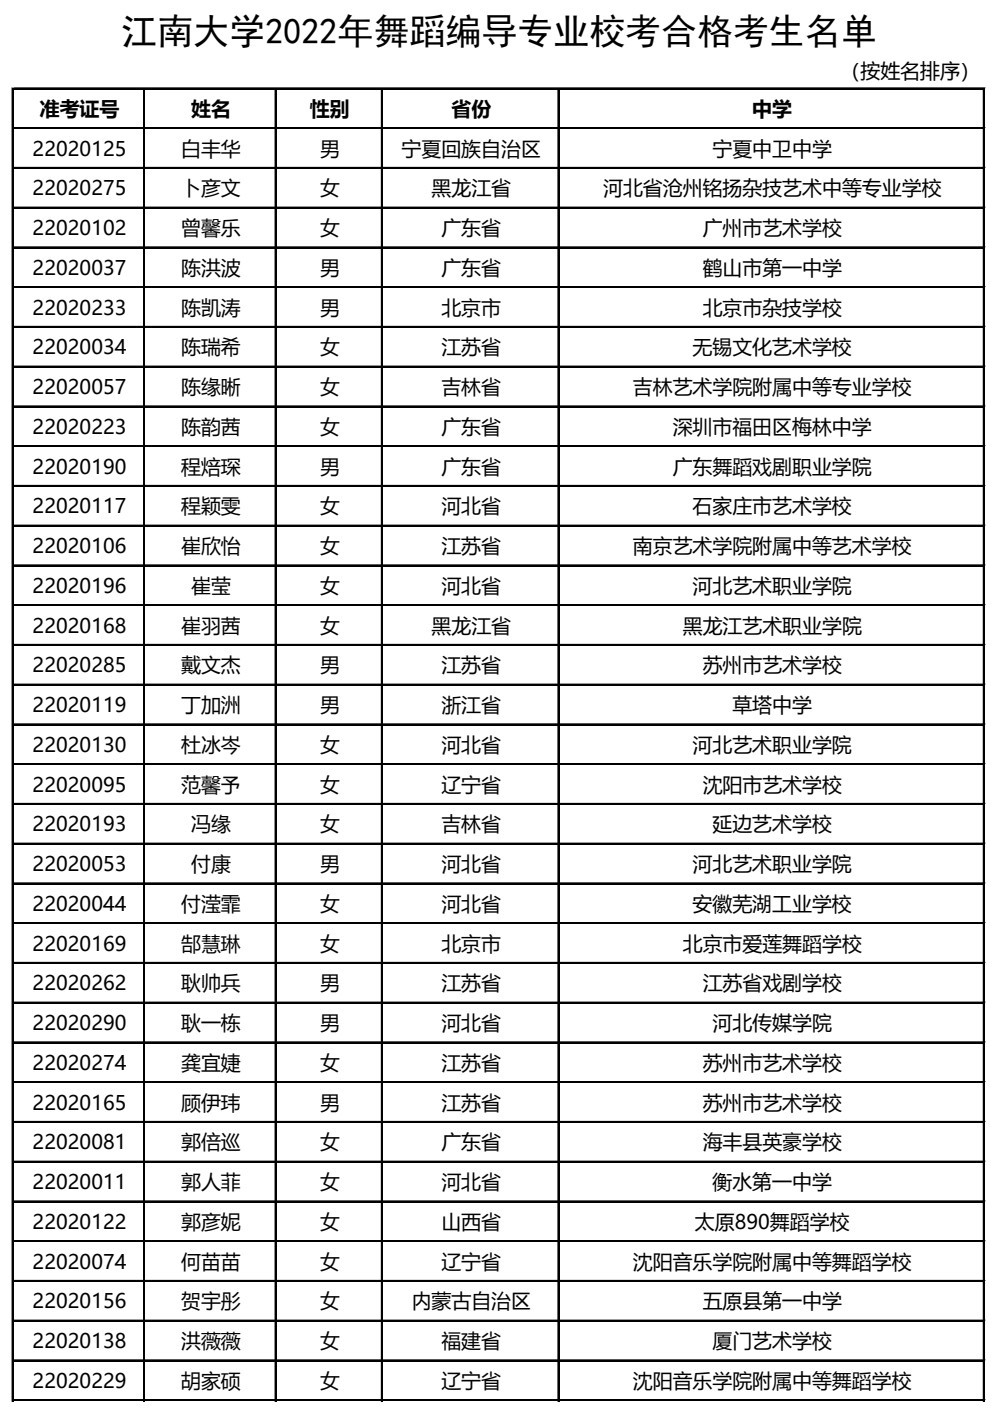 2022年江南大学舞蹈编导专业合格线为617分 校考合格考生名单公示、公示时间